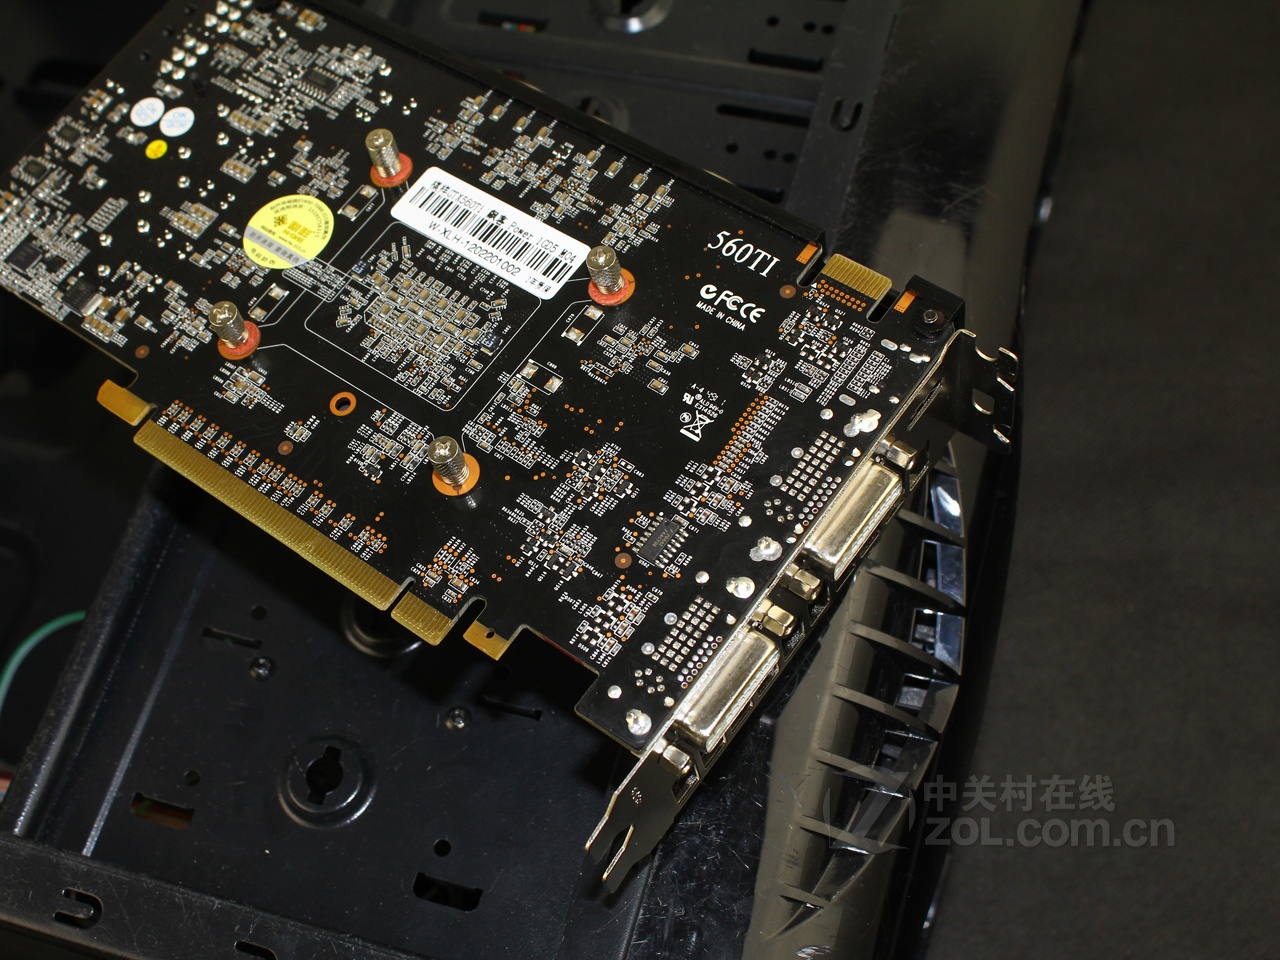 七彩虹GTX-970显卡散热器安装8大技巧，轻松解决难题  第1张